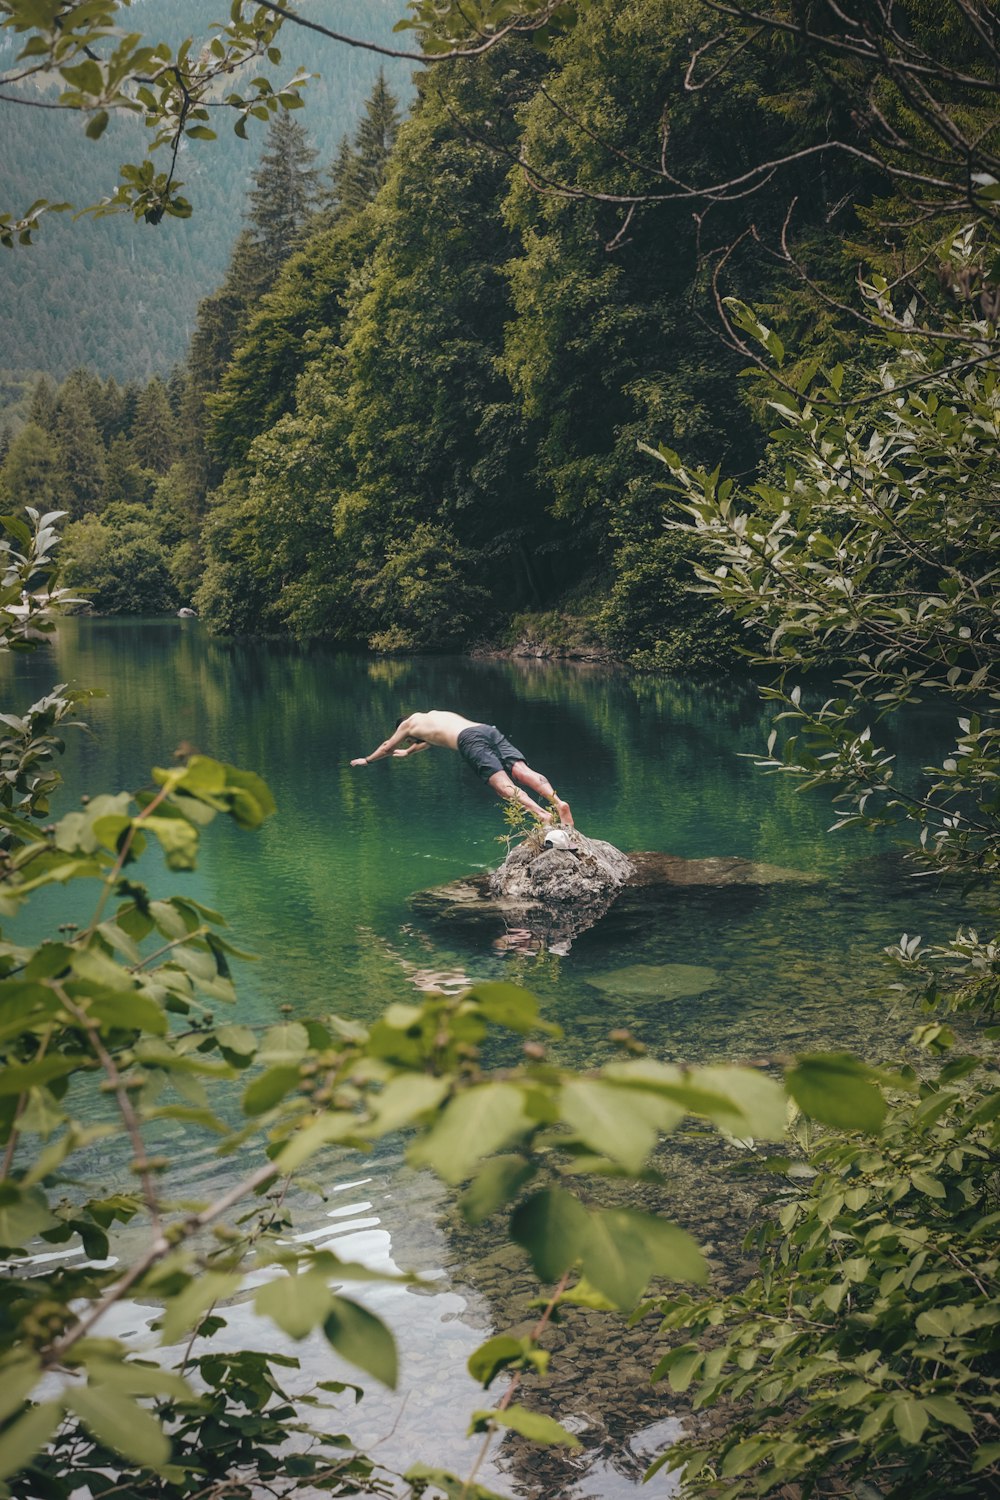 Homem de topless vestindo shorts pretos prestes a mergulhar na água perto de árvores